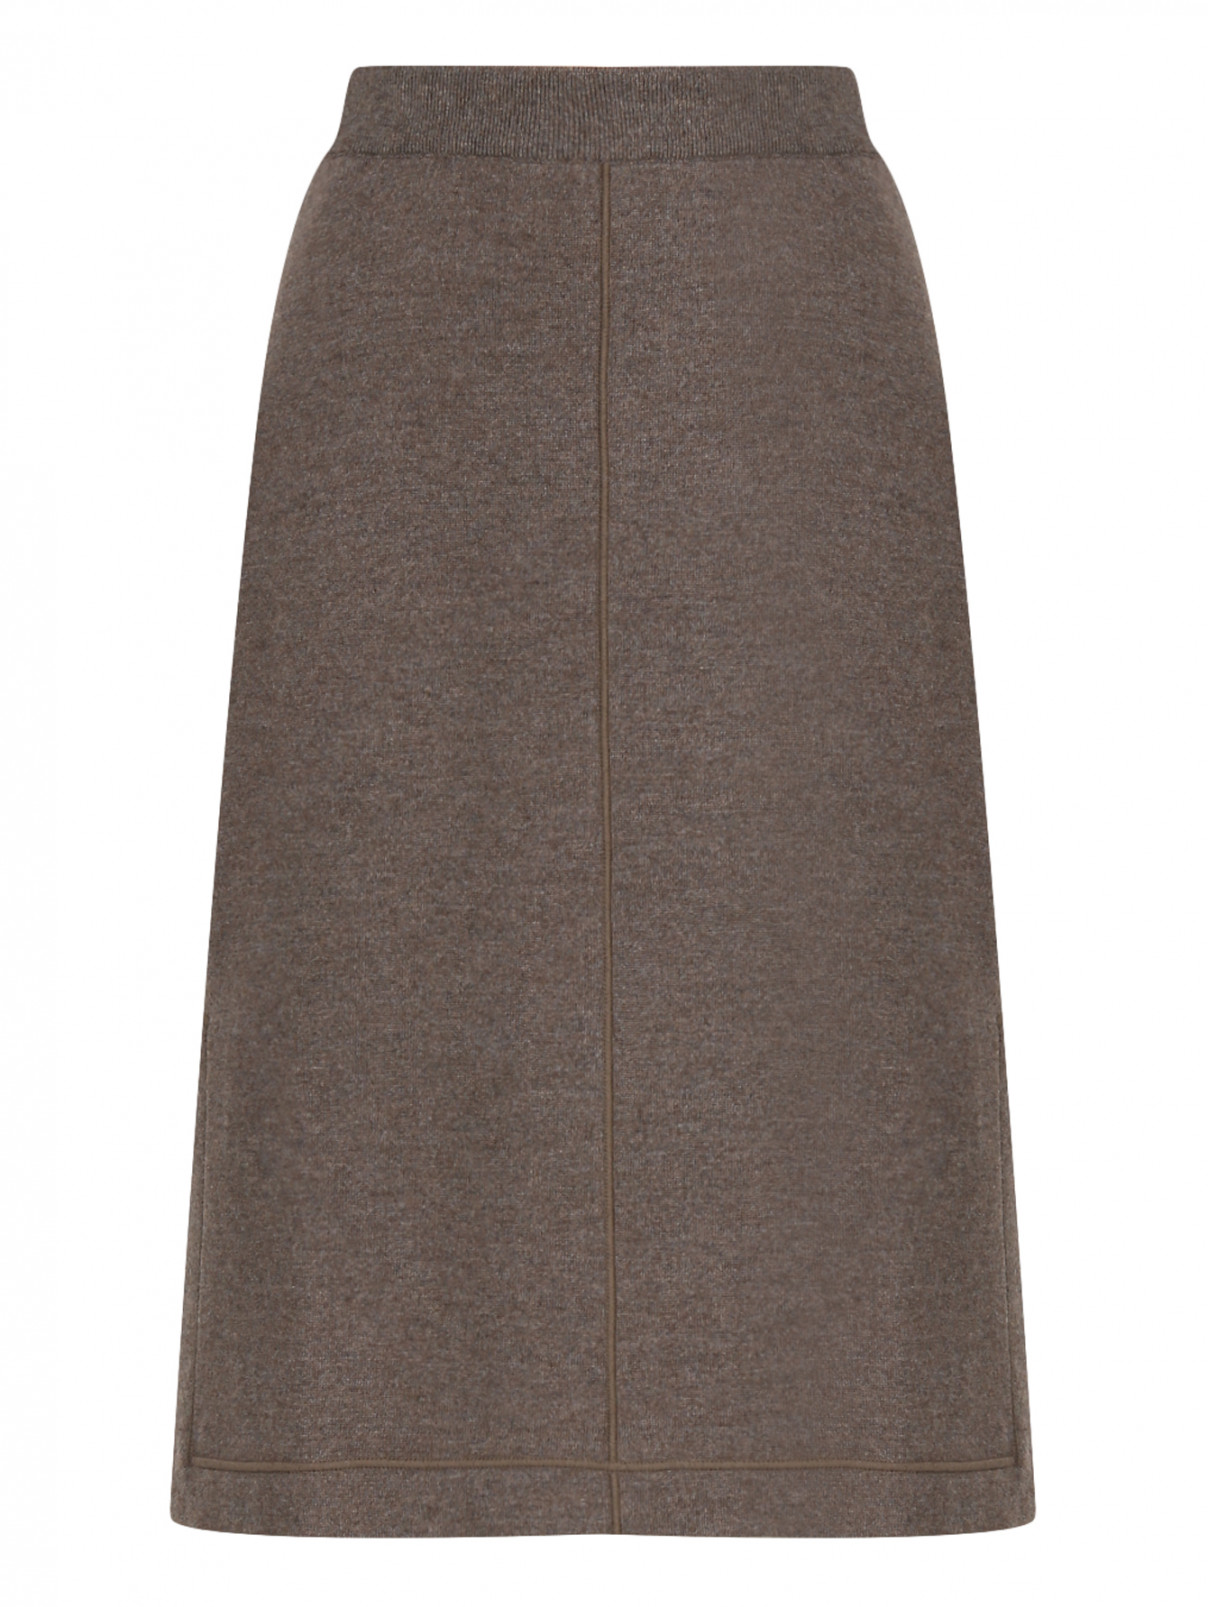 Трикотажная юбка из шерсти и кашемира Jil Sander  –  Общий вид  – Цвет:  Коричневый